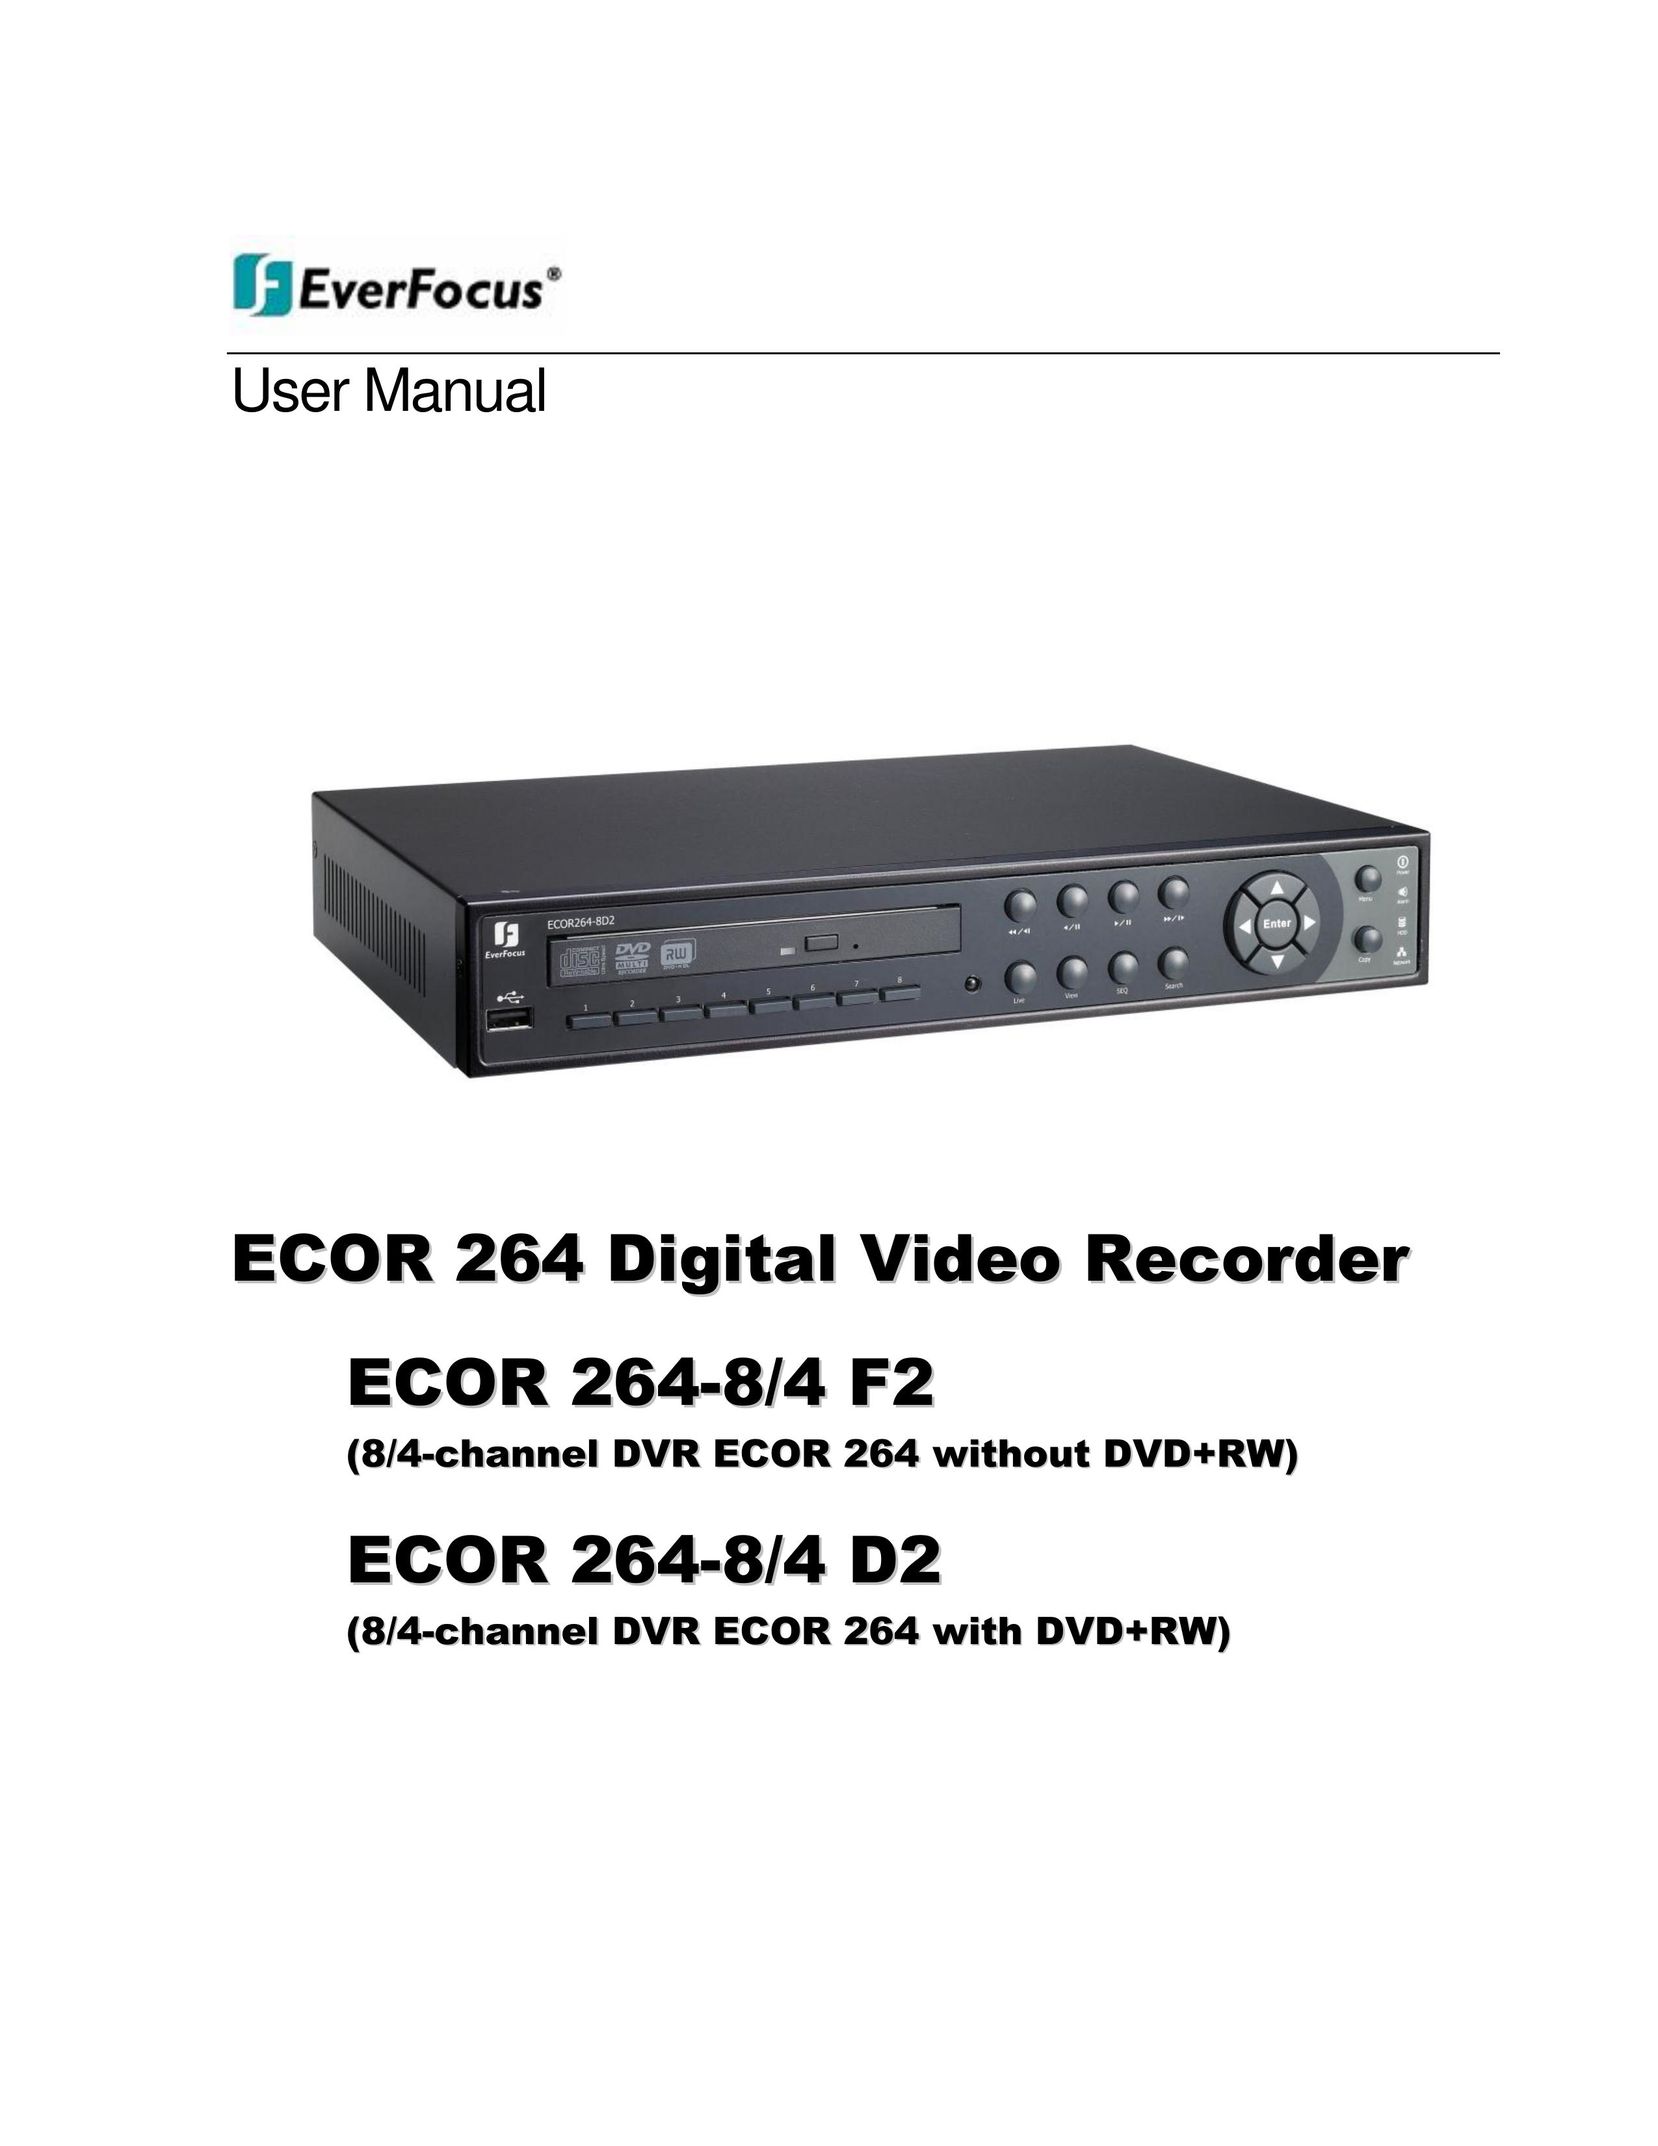 EverFocus ECOR 264-8/4 F2 DVR User Manual